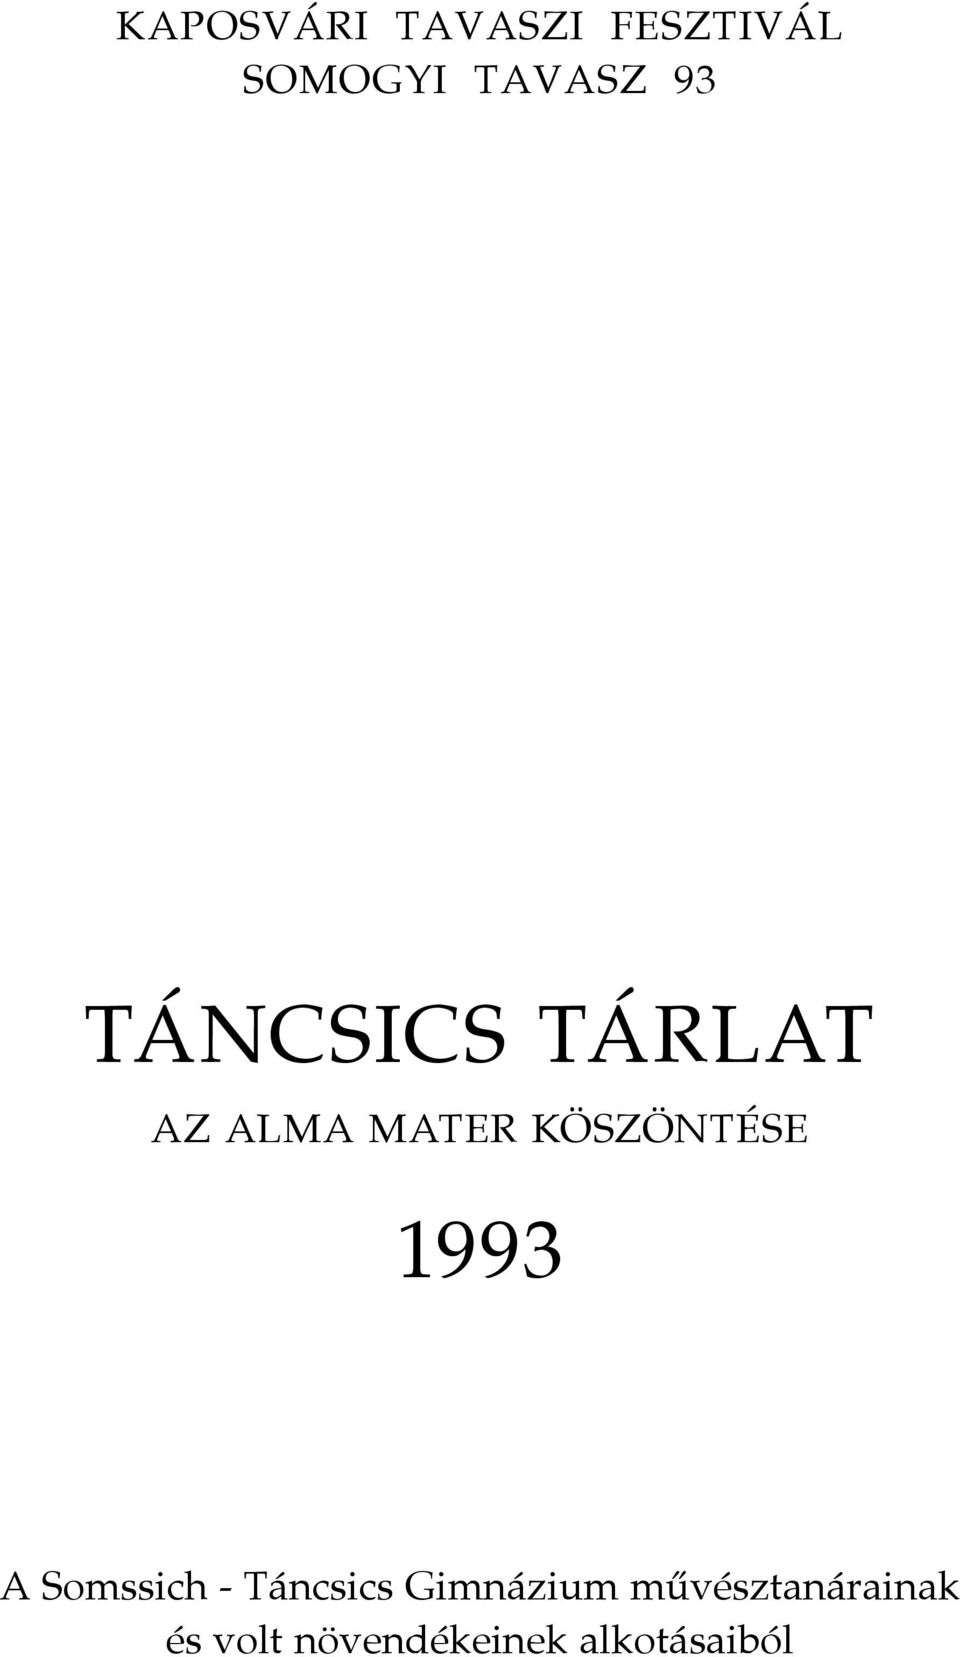 1993 A Somssich - Táncsics Gimnázium